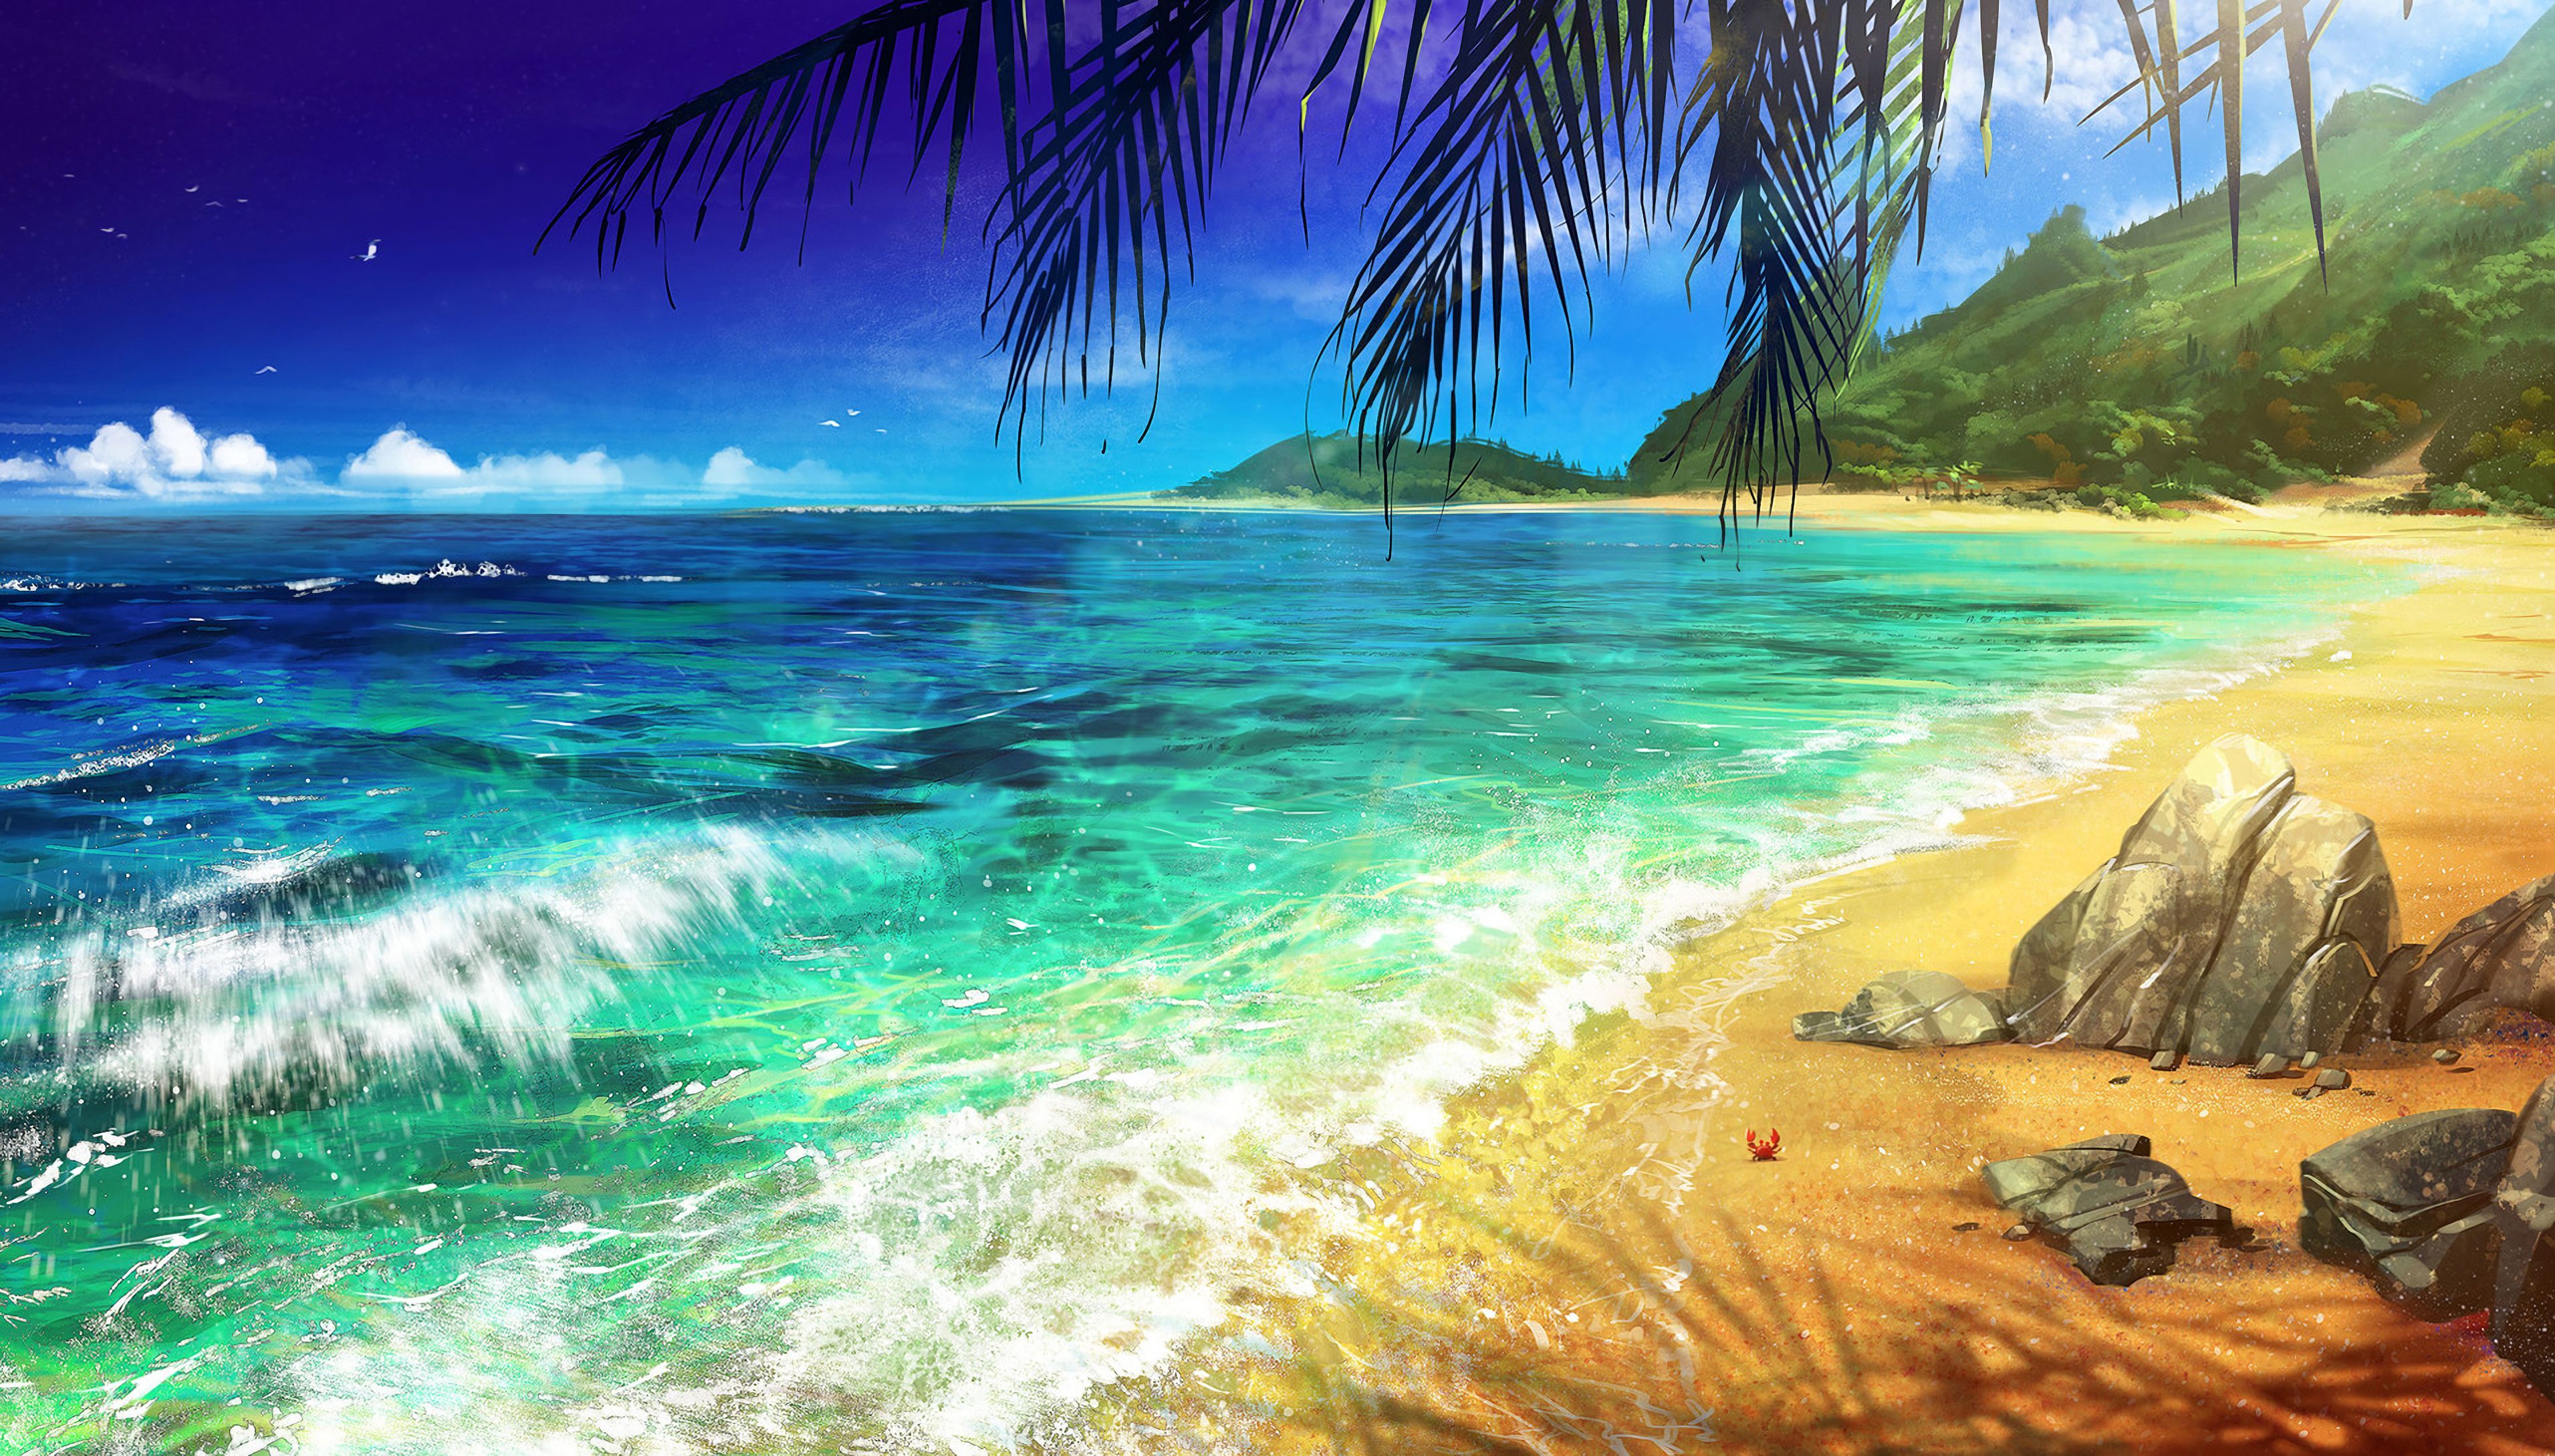  Das Schönste Der Welt Hintergrundbild 3822x2178. Laden Sie Das Strand Hintergrundbild Für Ihr Handy In Hochwertigen, Hintergrundbildern Strand Kostenlos Herunter